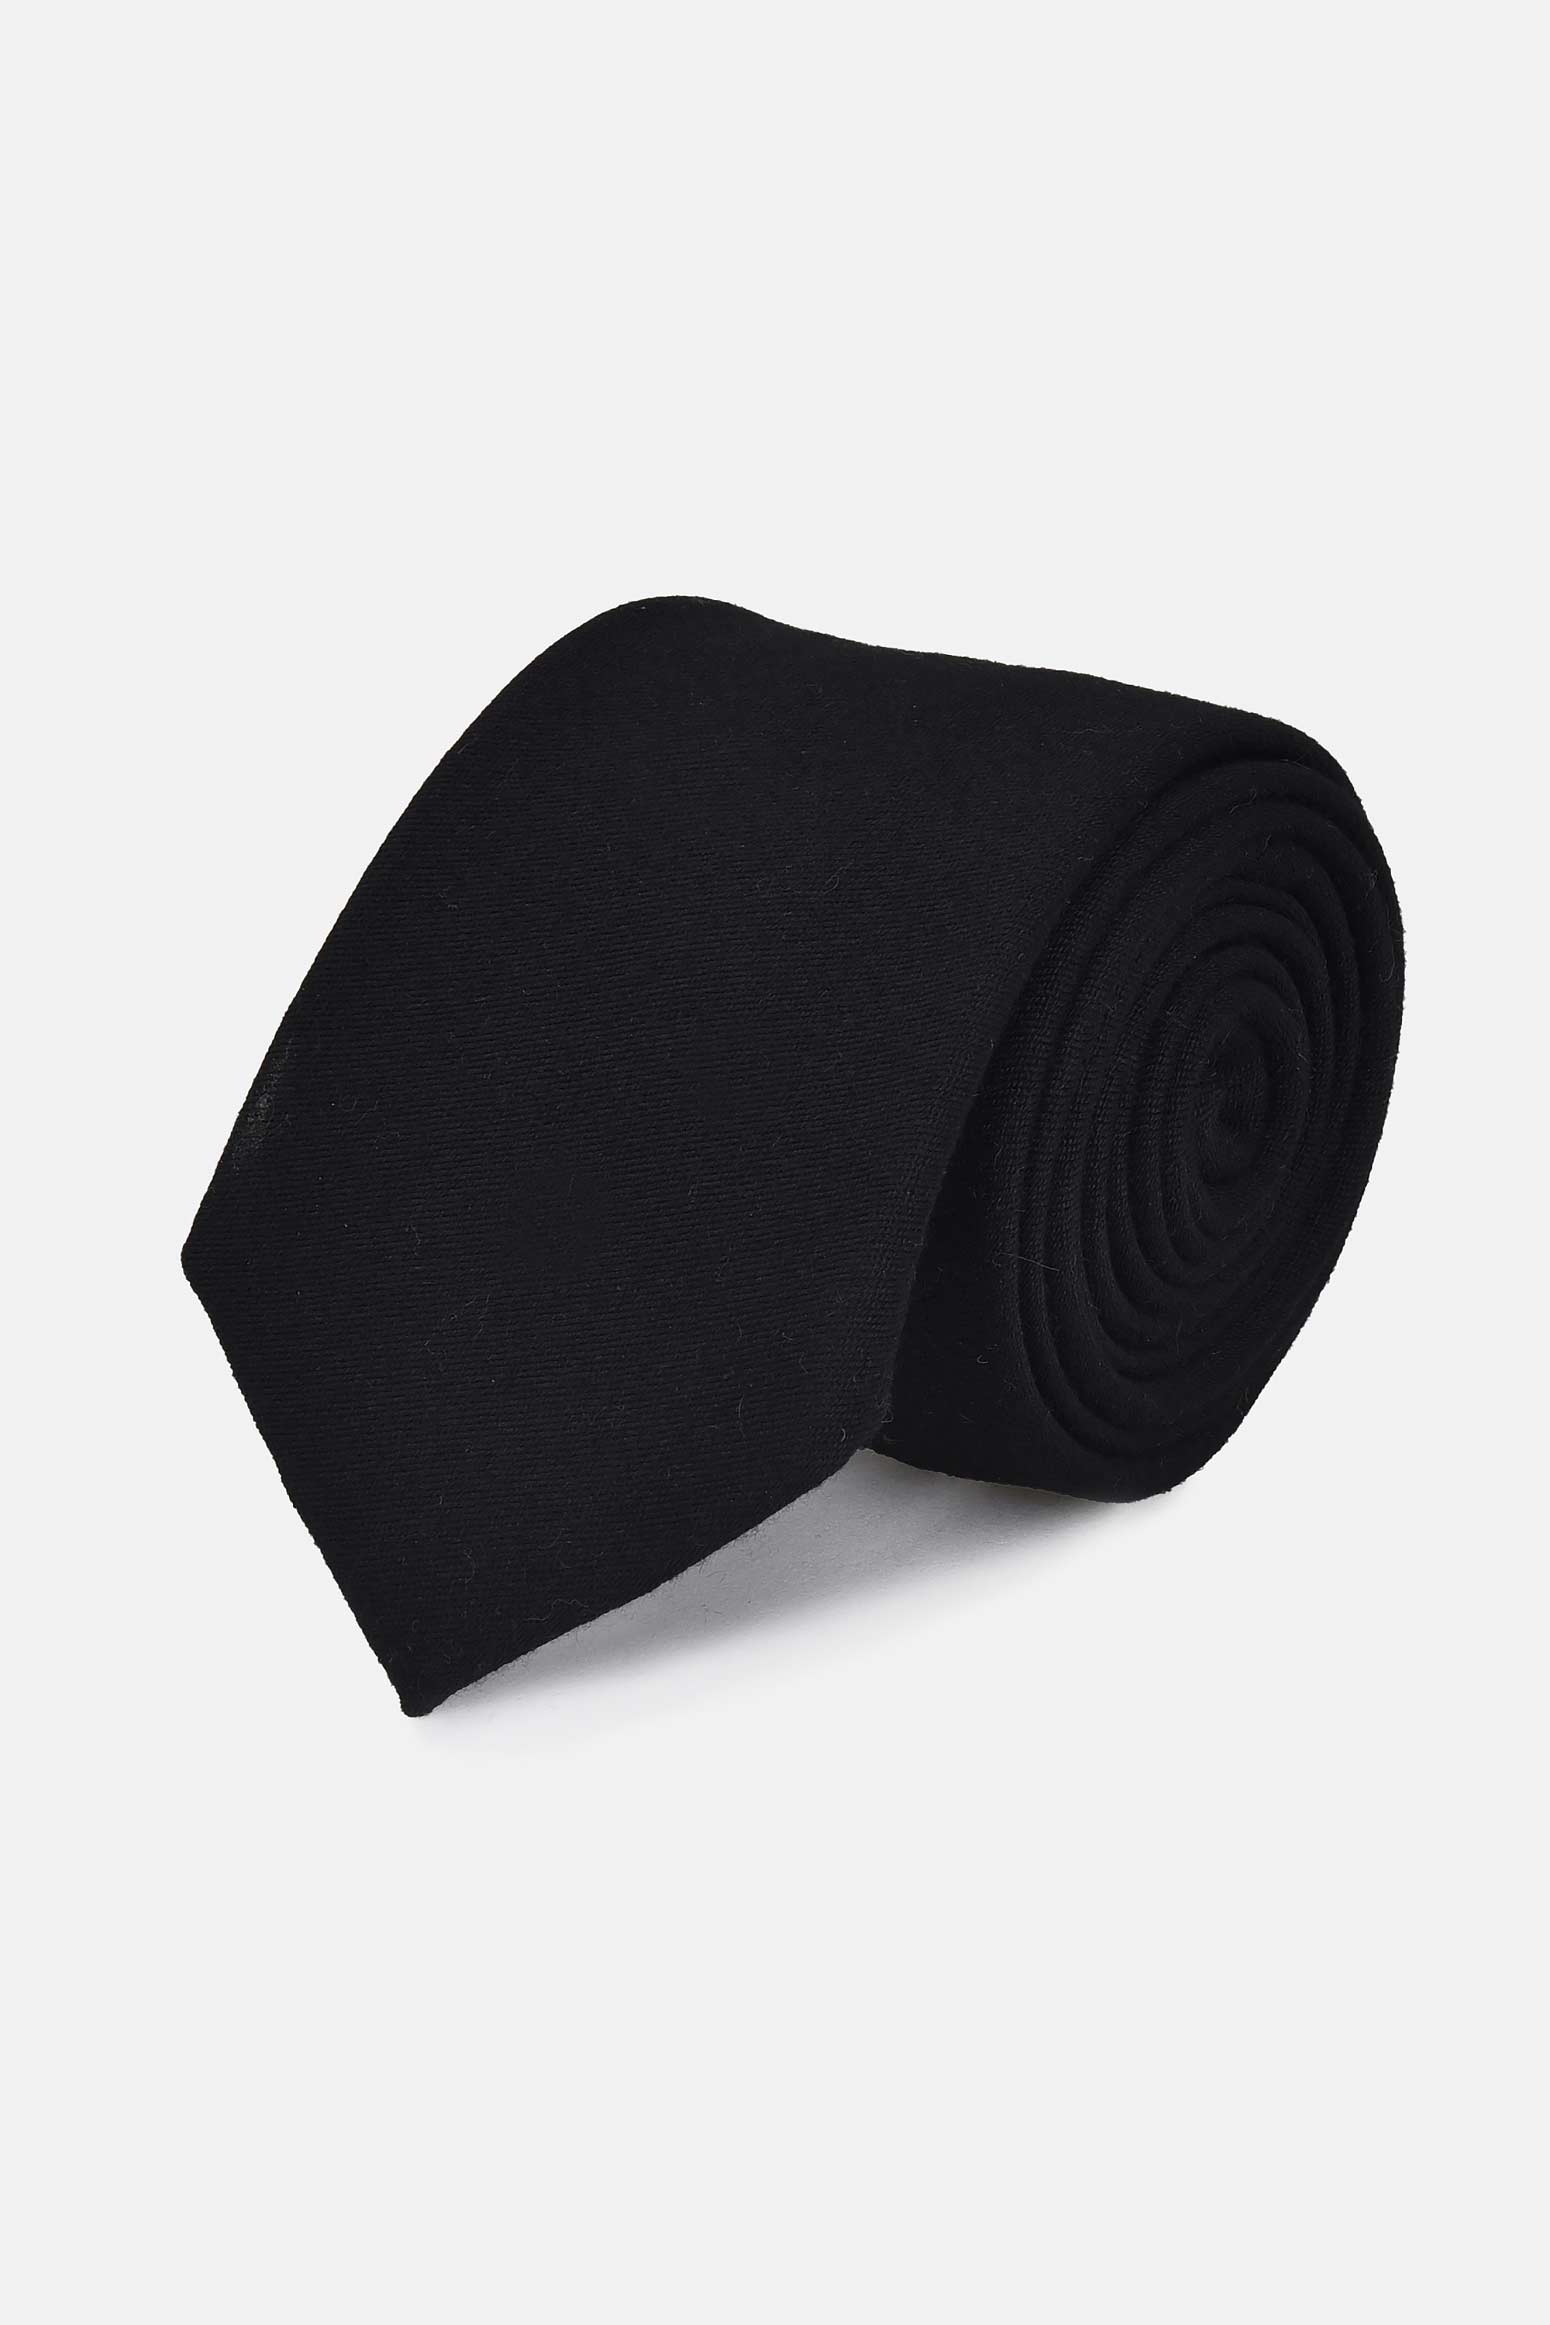 ανδρική-μονόχρωμη-γραβάτα-100%-μάλλινη